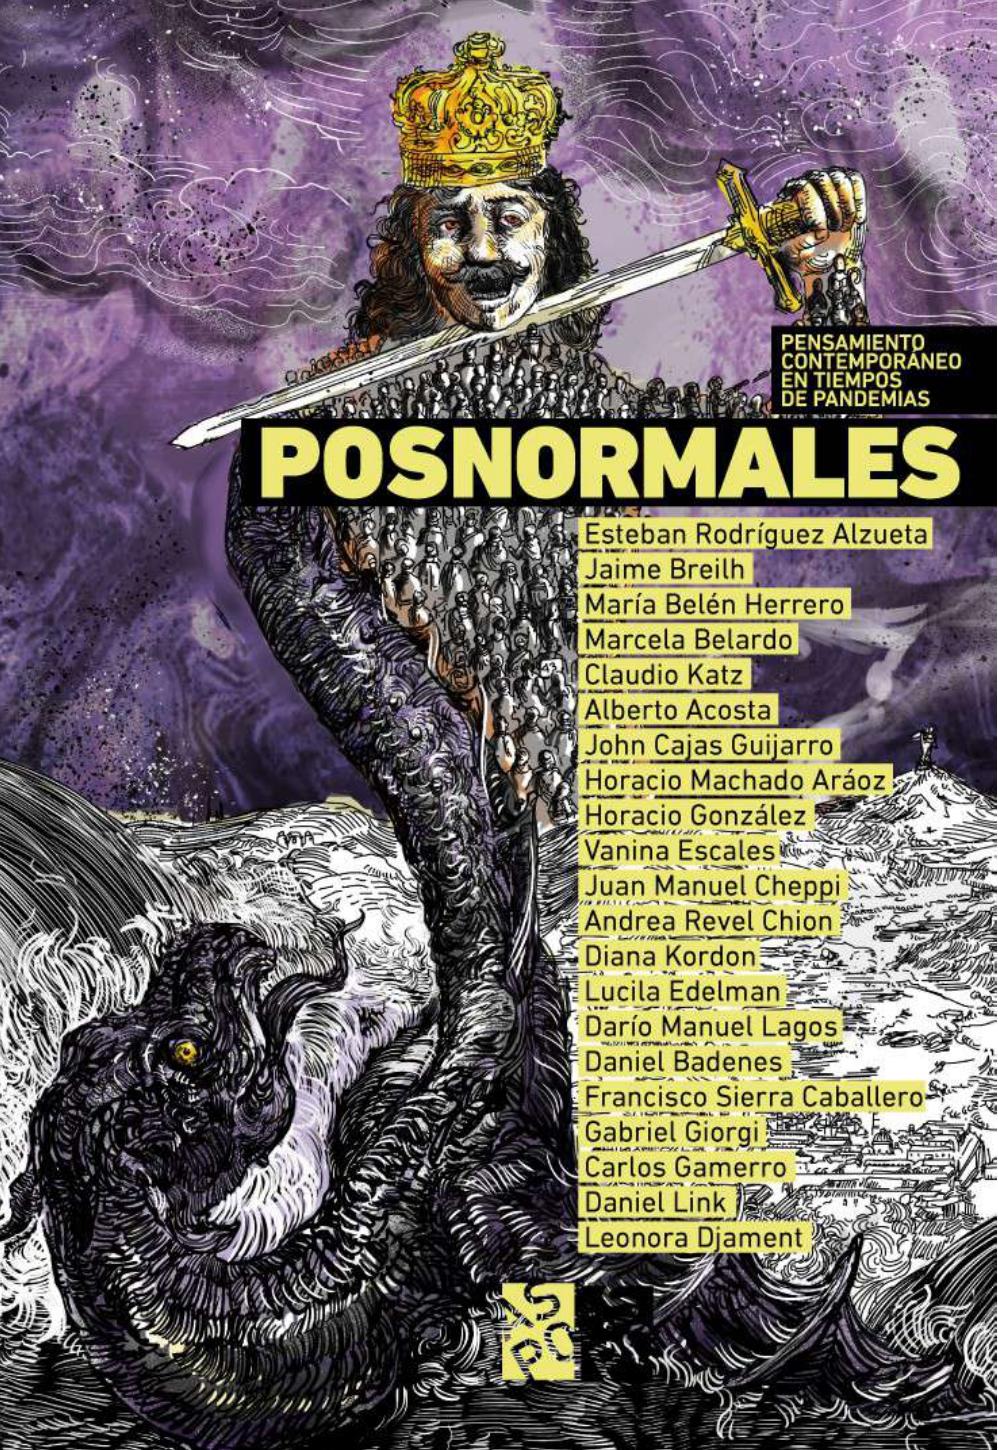 Francisco Sierra participa en la publición argentina "Posnormales"